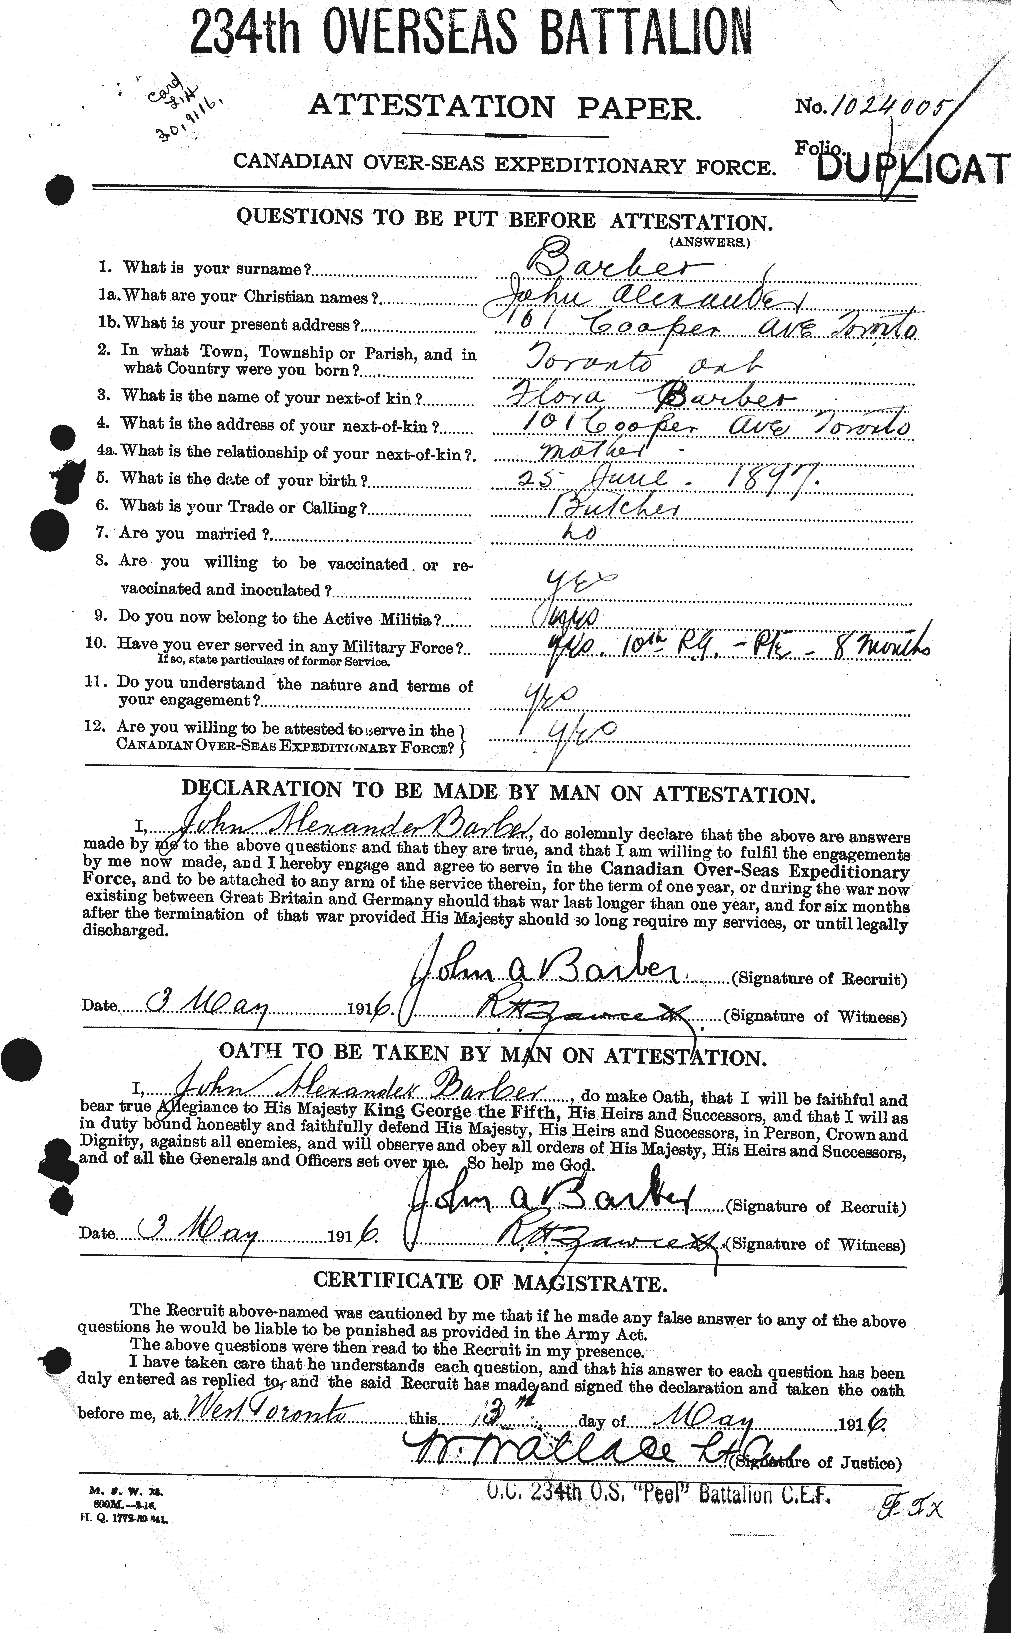 Dossiers du Personnel de la Première Guerre mondiale - CEC 219089a